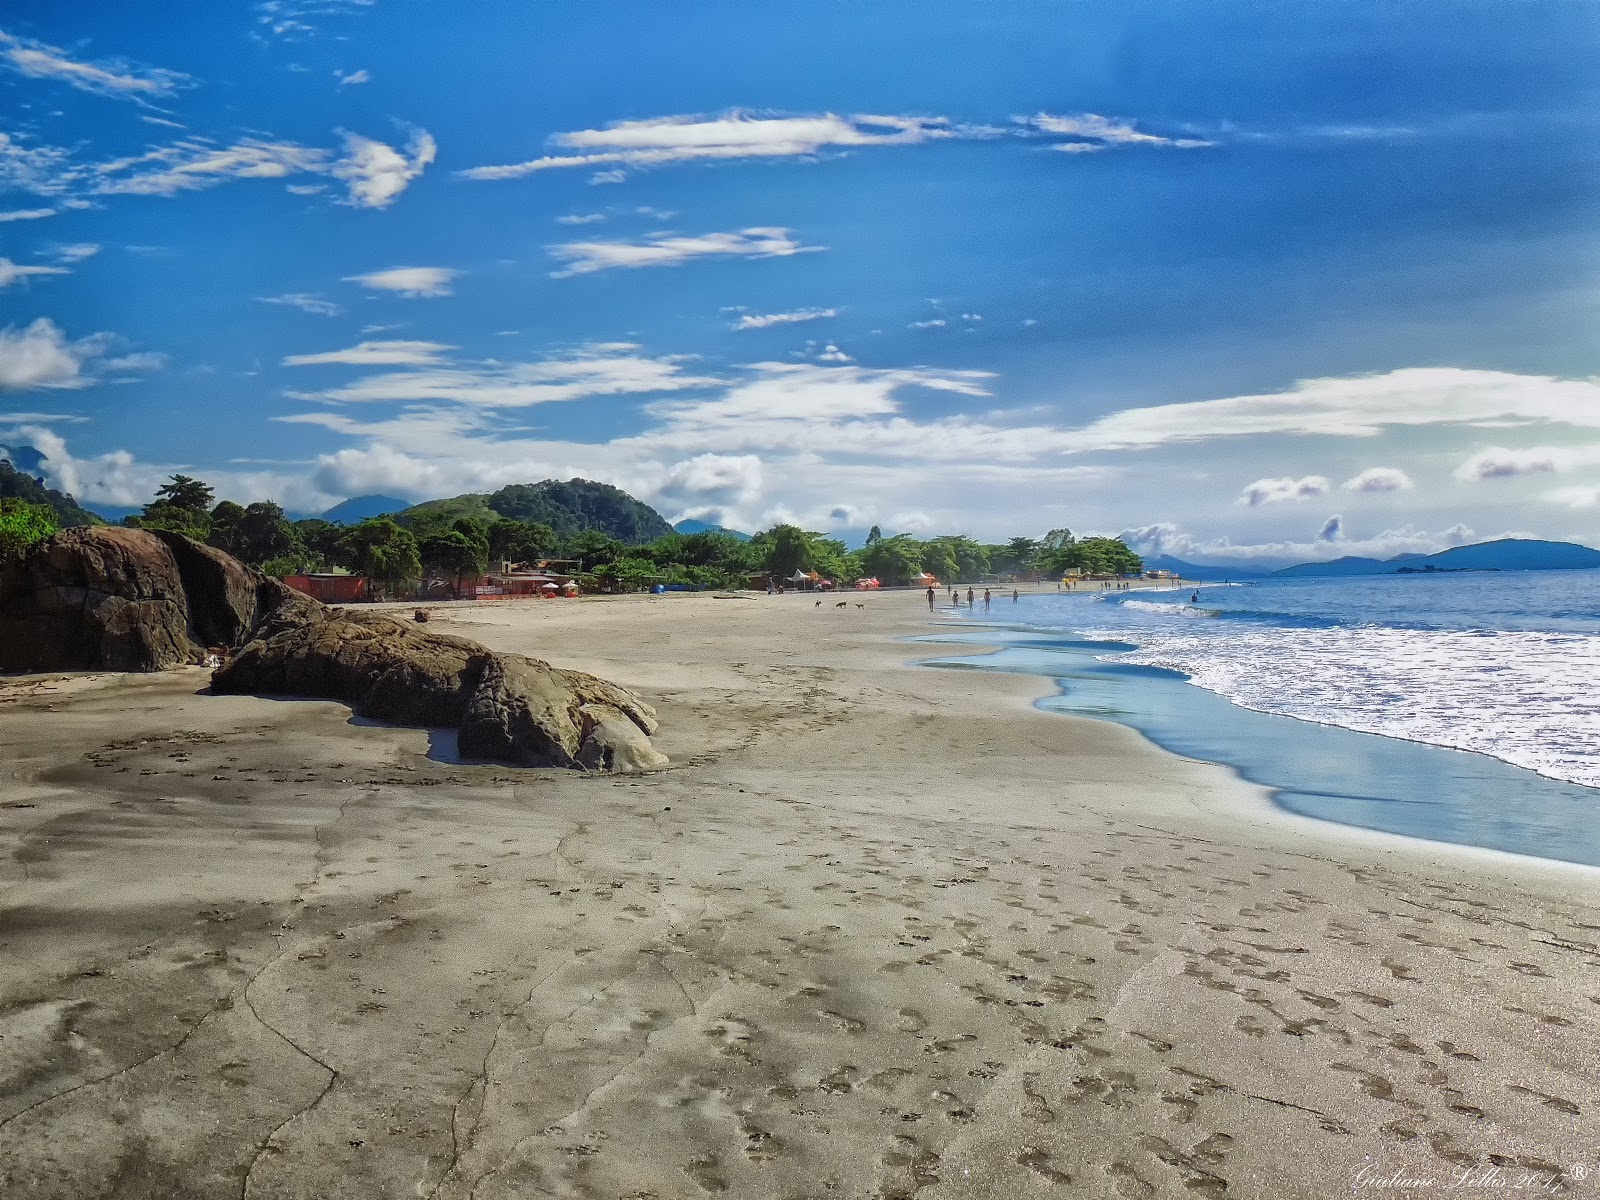 Sossego Plajı'in fotoğrafı parlak ince kum yüzey ile